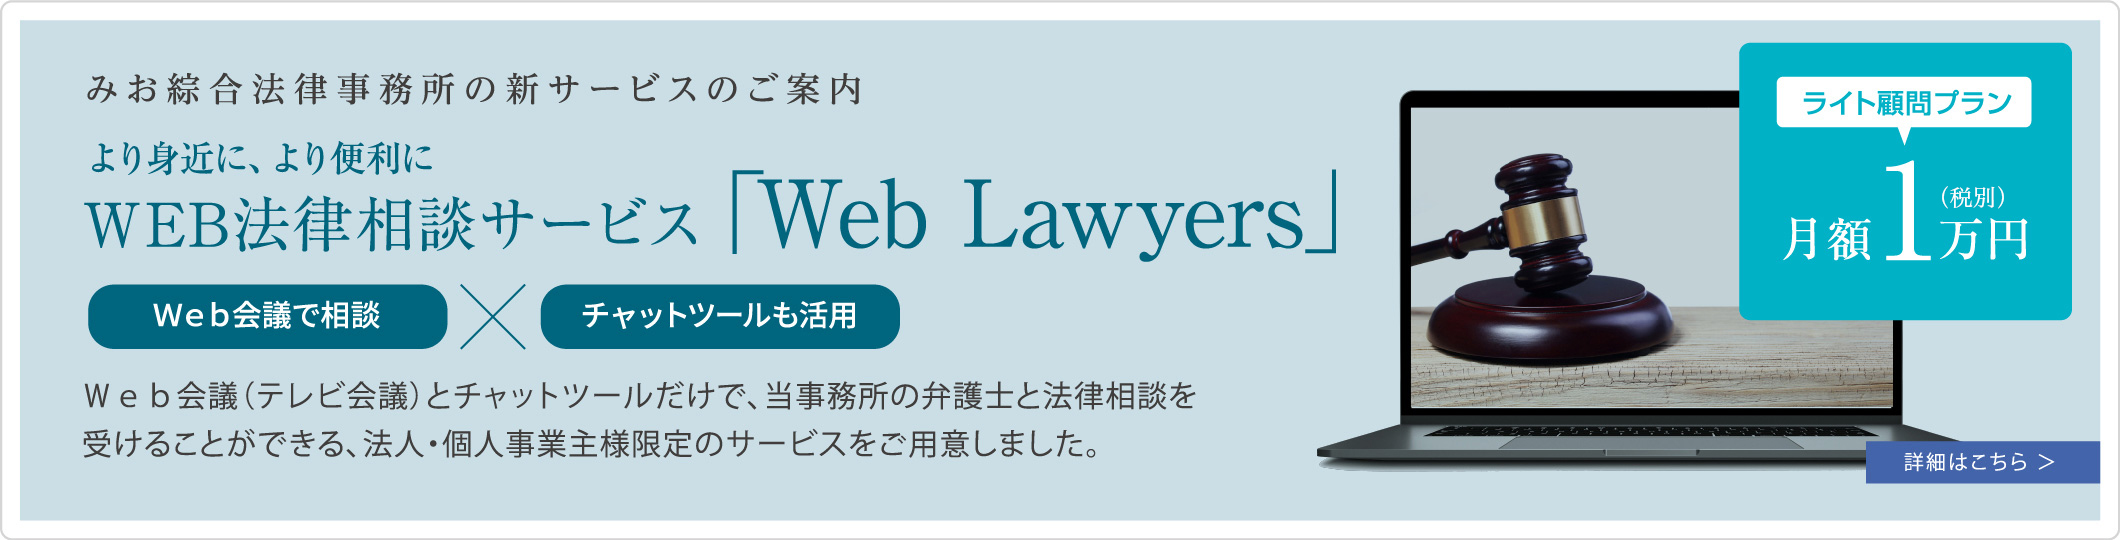 みお綜合法律事務所の新サービスのご案内 WEB法律相談サービス「Web Lawyers」　詳細はこちら